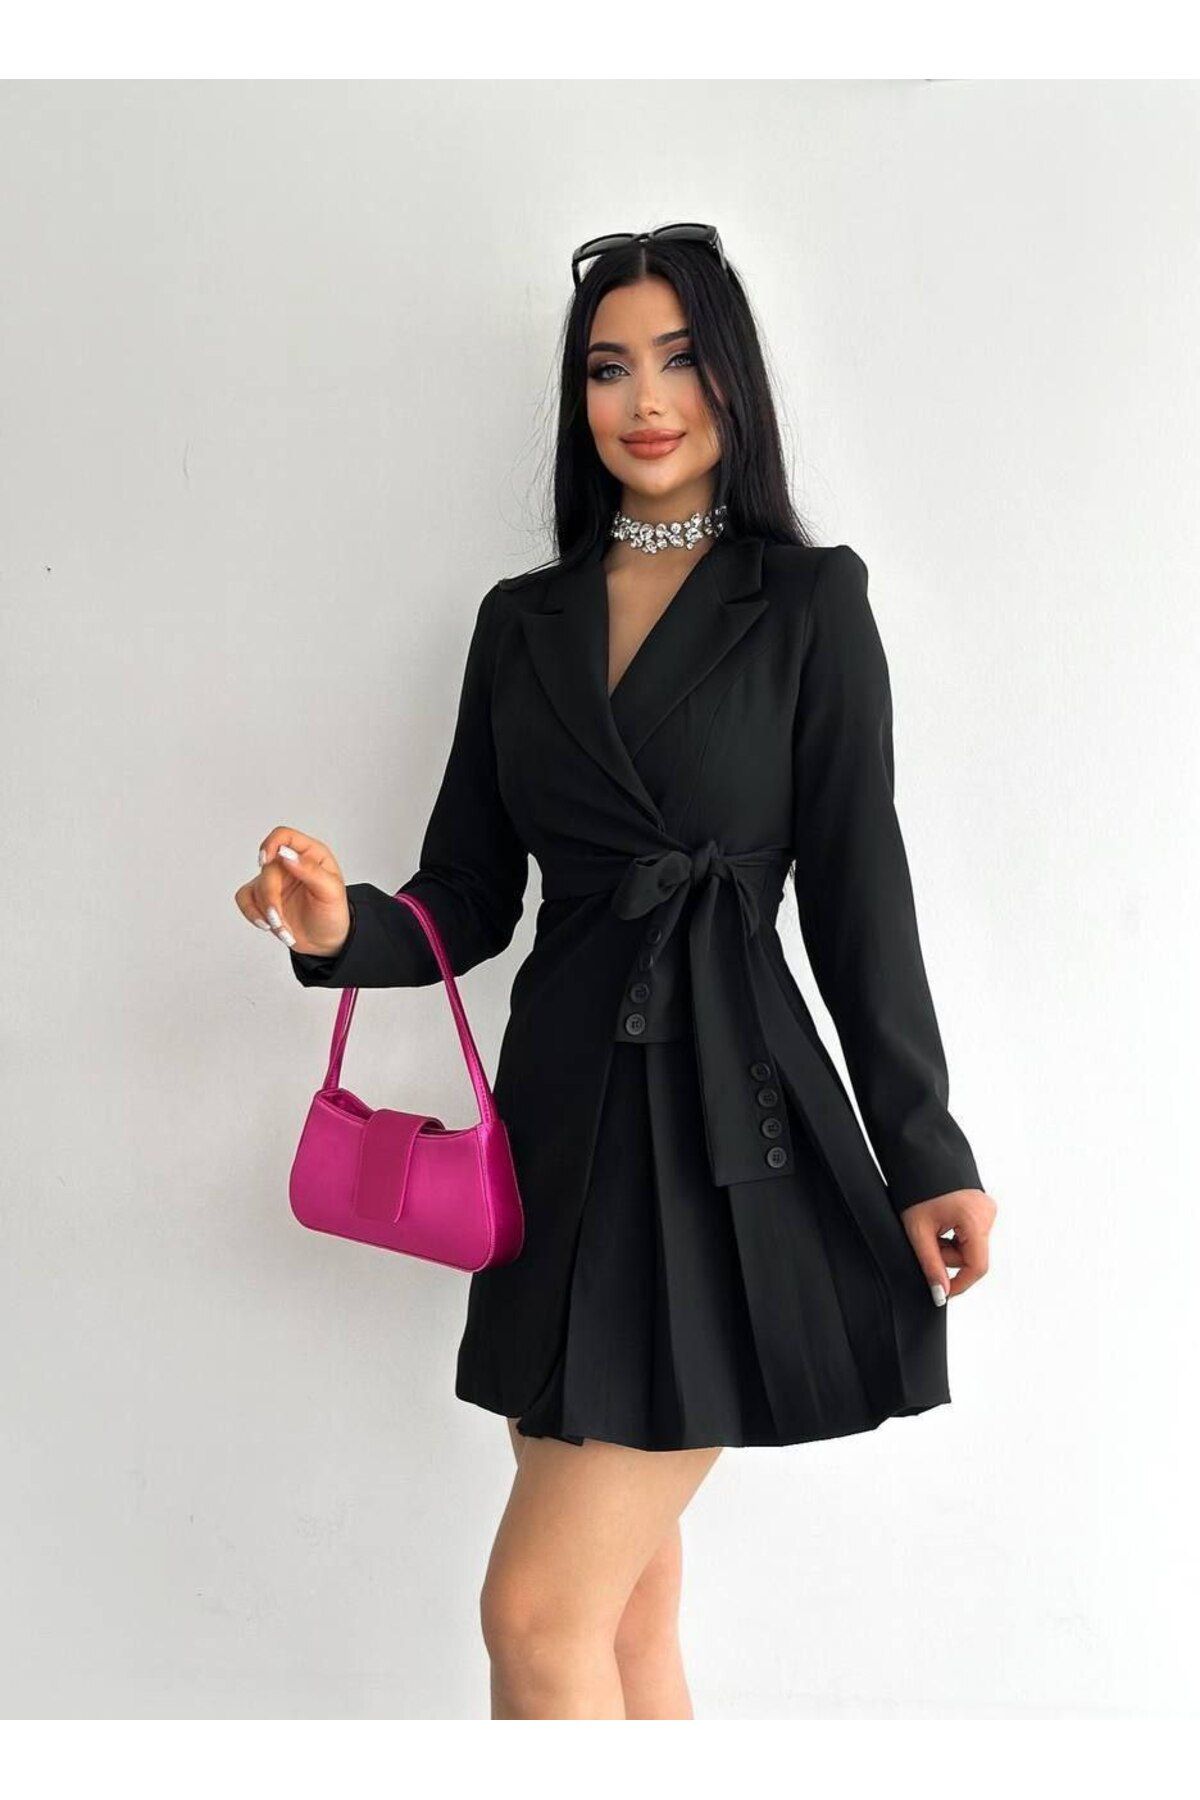 msm fashion Siyah Kruvaze Yaka Kuşak ve Düğme Detaylı Pileli Ceket Elbise